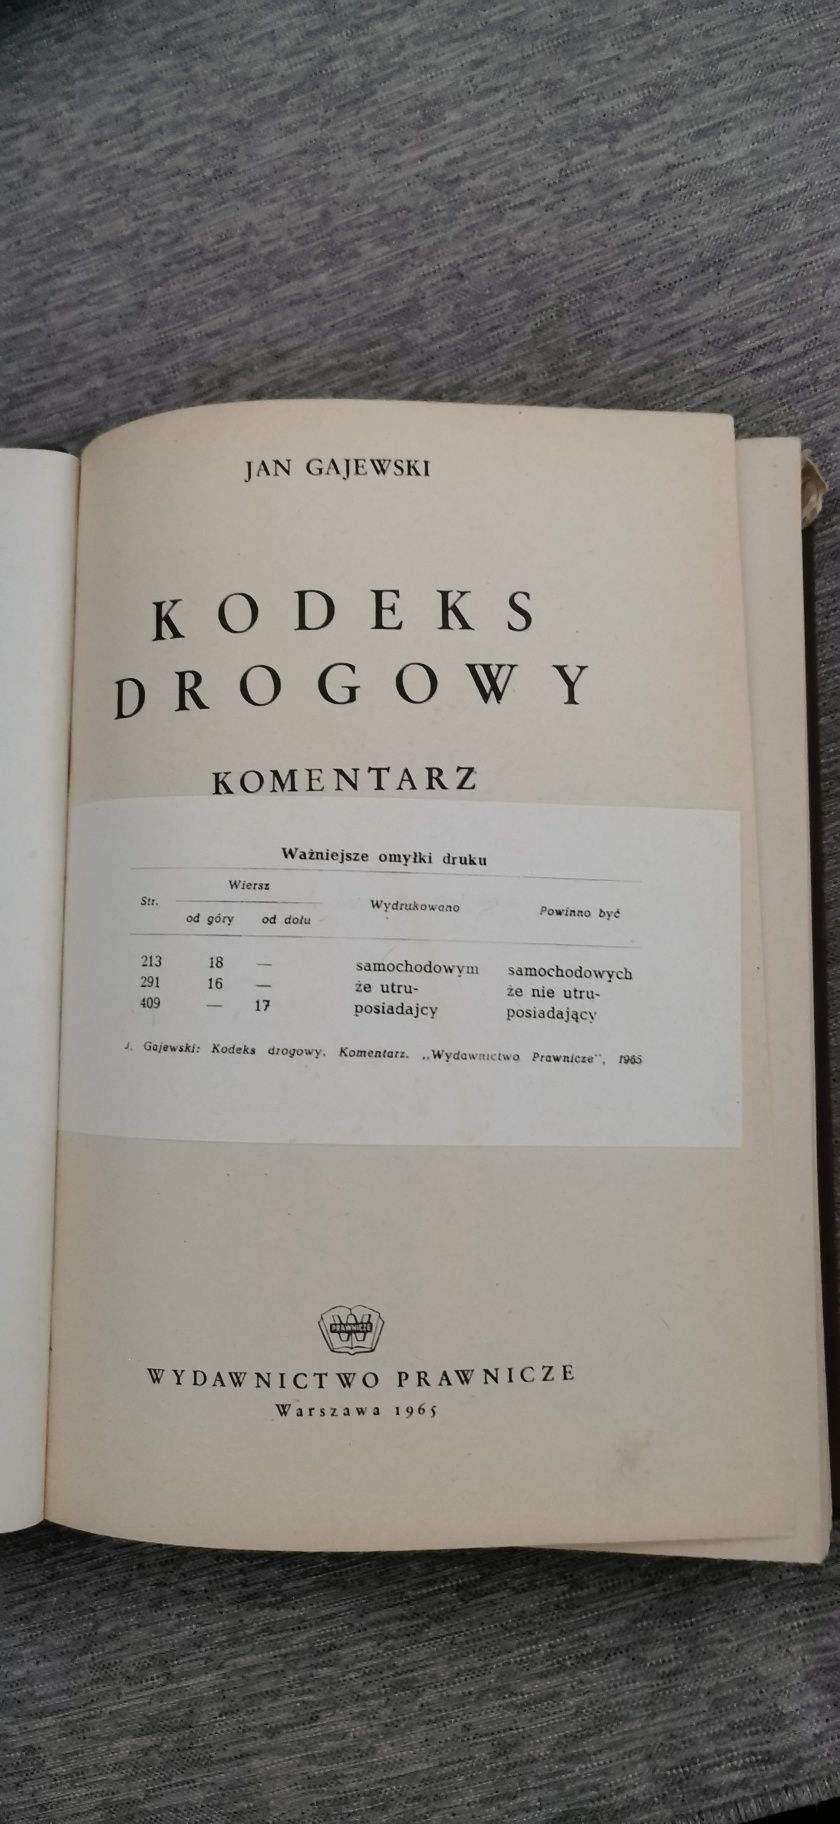 Kodeks drogowy. Komentarz Jan Gajewski 1965